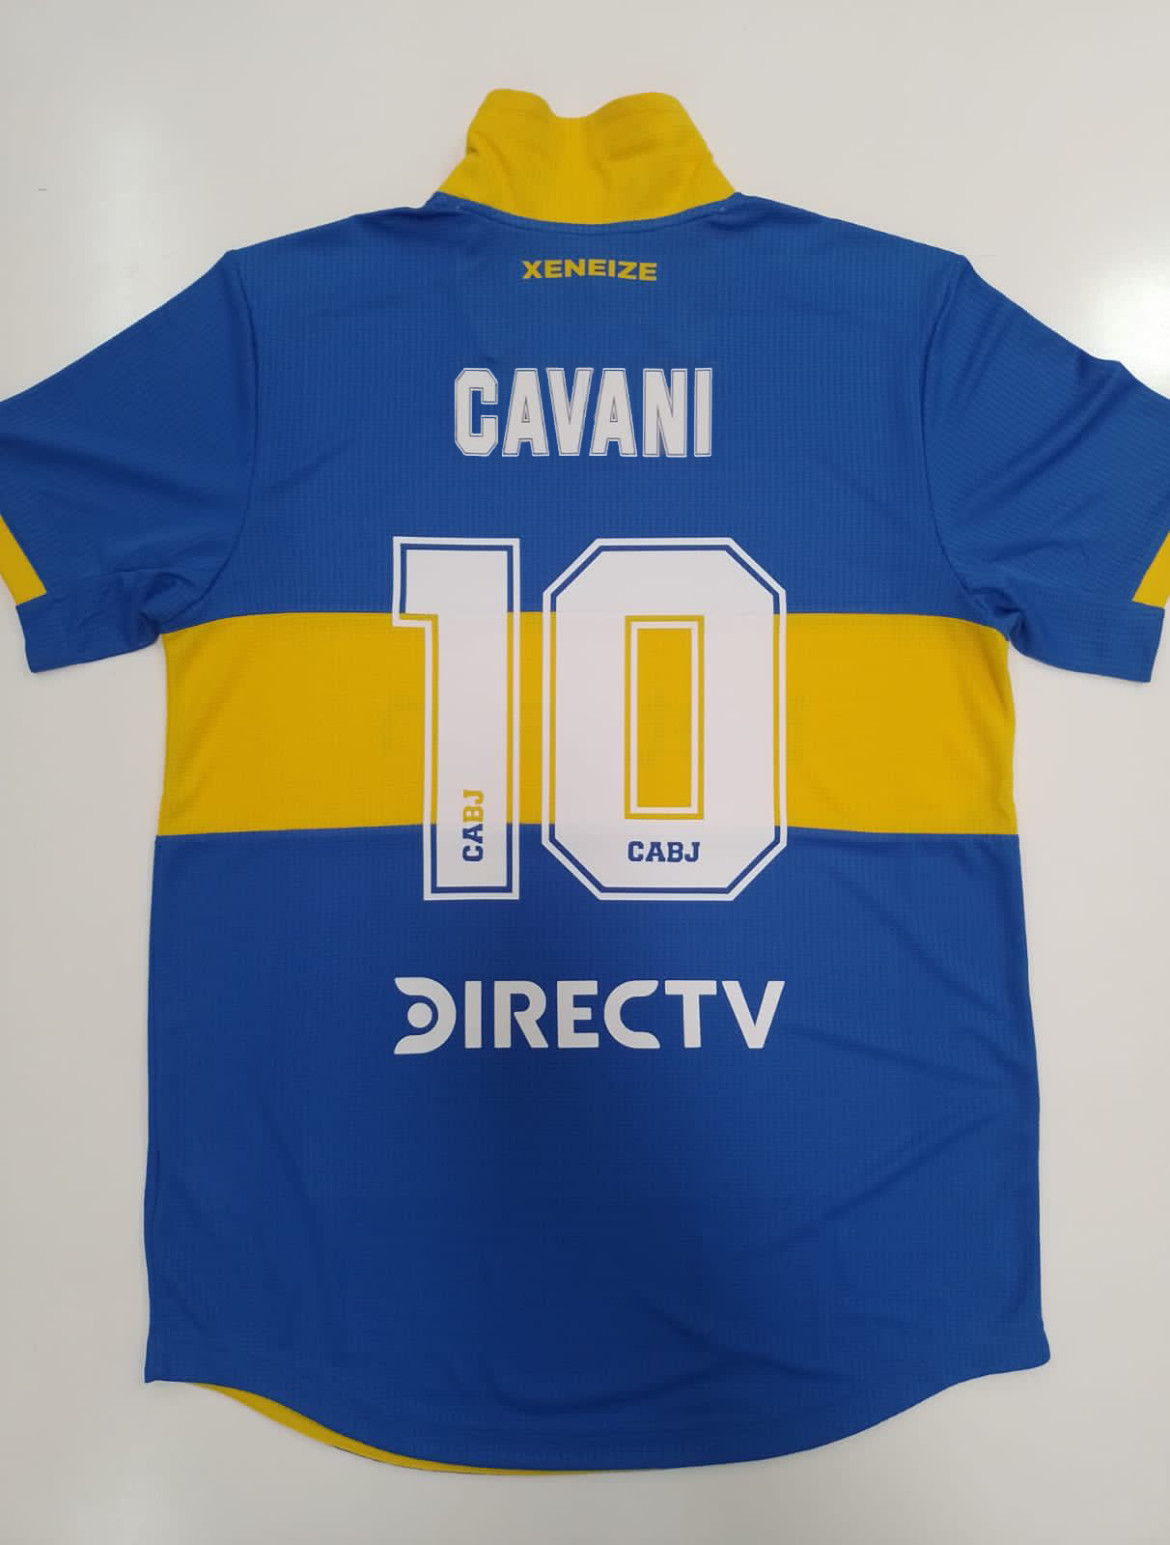 Edinson Cavani llevará la mítica número 10 de Boca Juniors. Foto: Twitter @BocaJrsOficial.